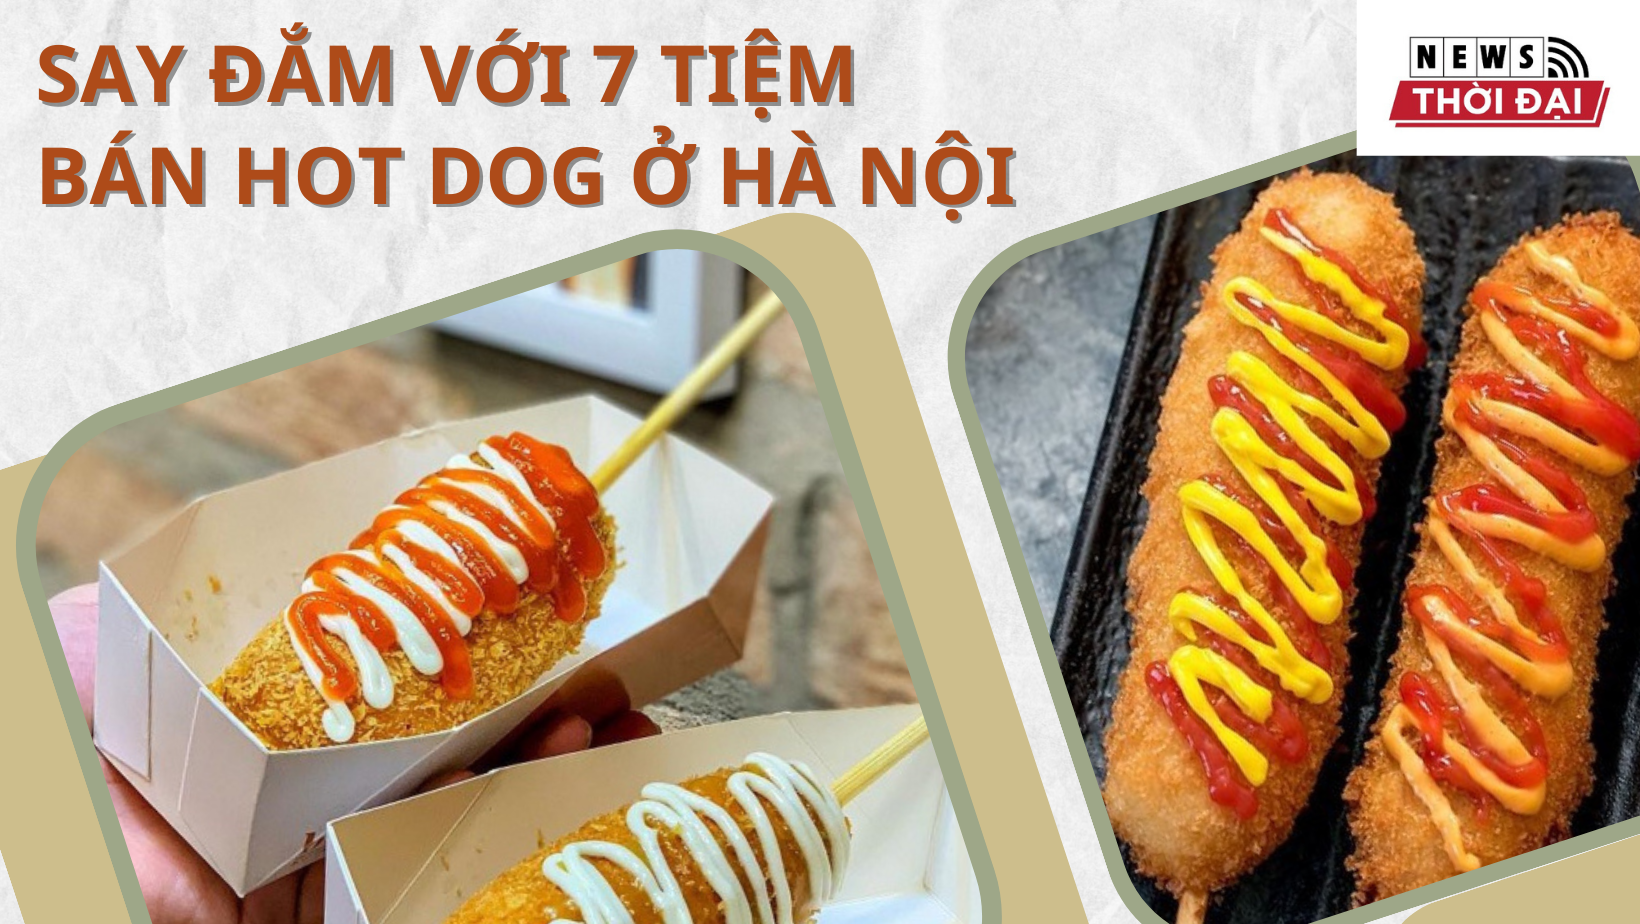 7 Tiệm Bán Hot Dog ở Hà Nội